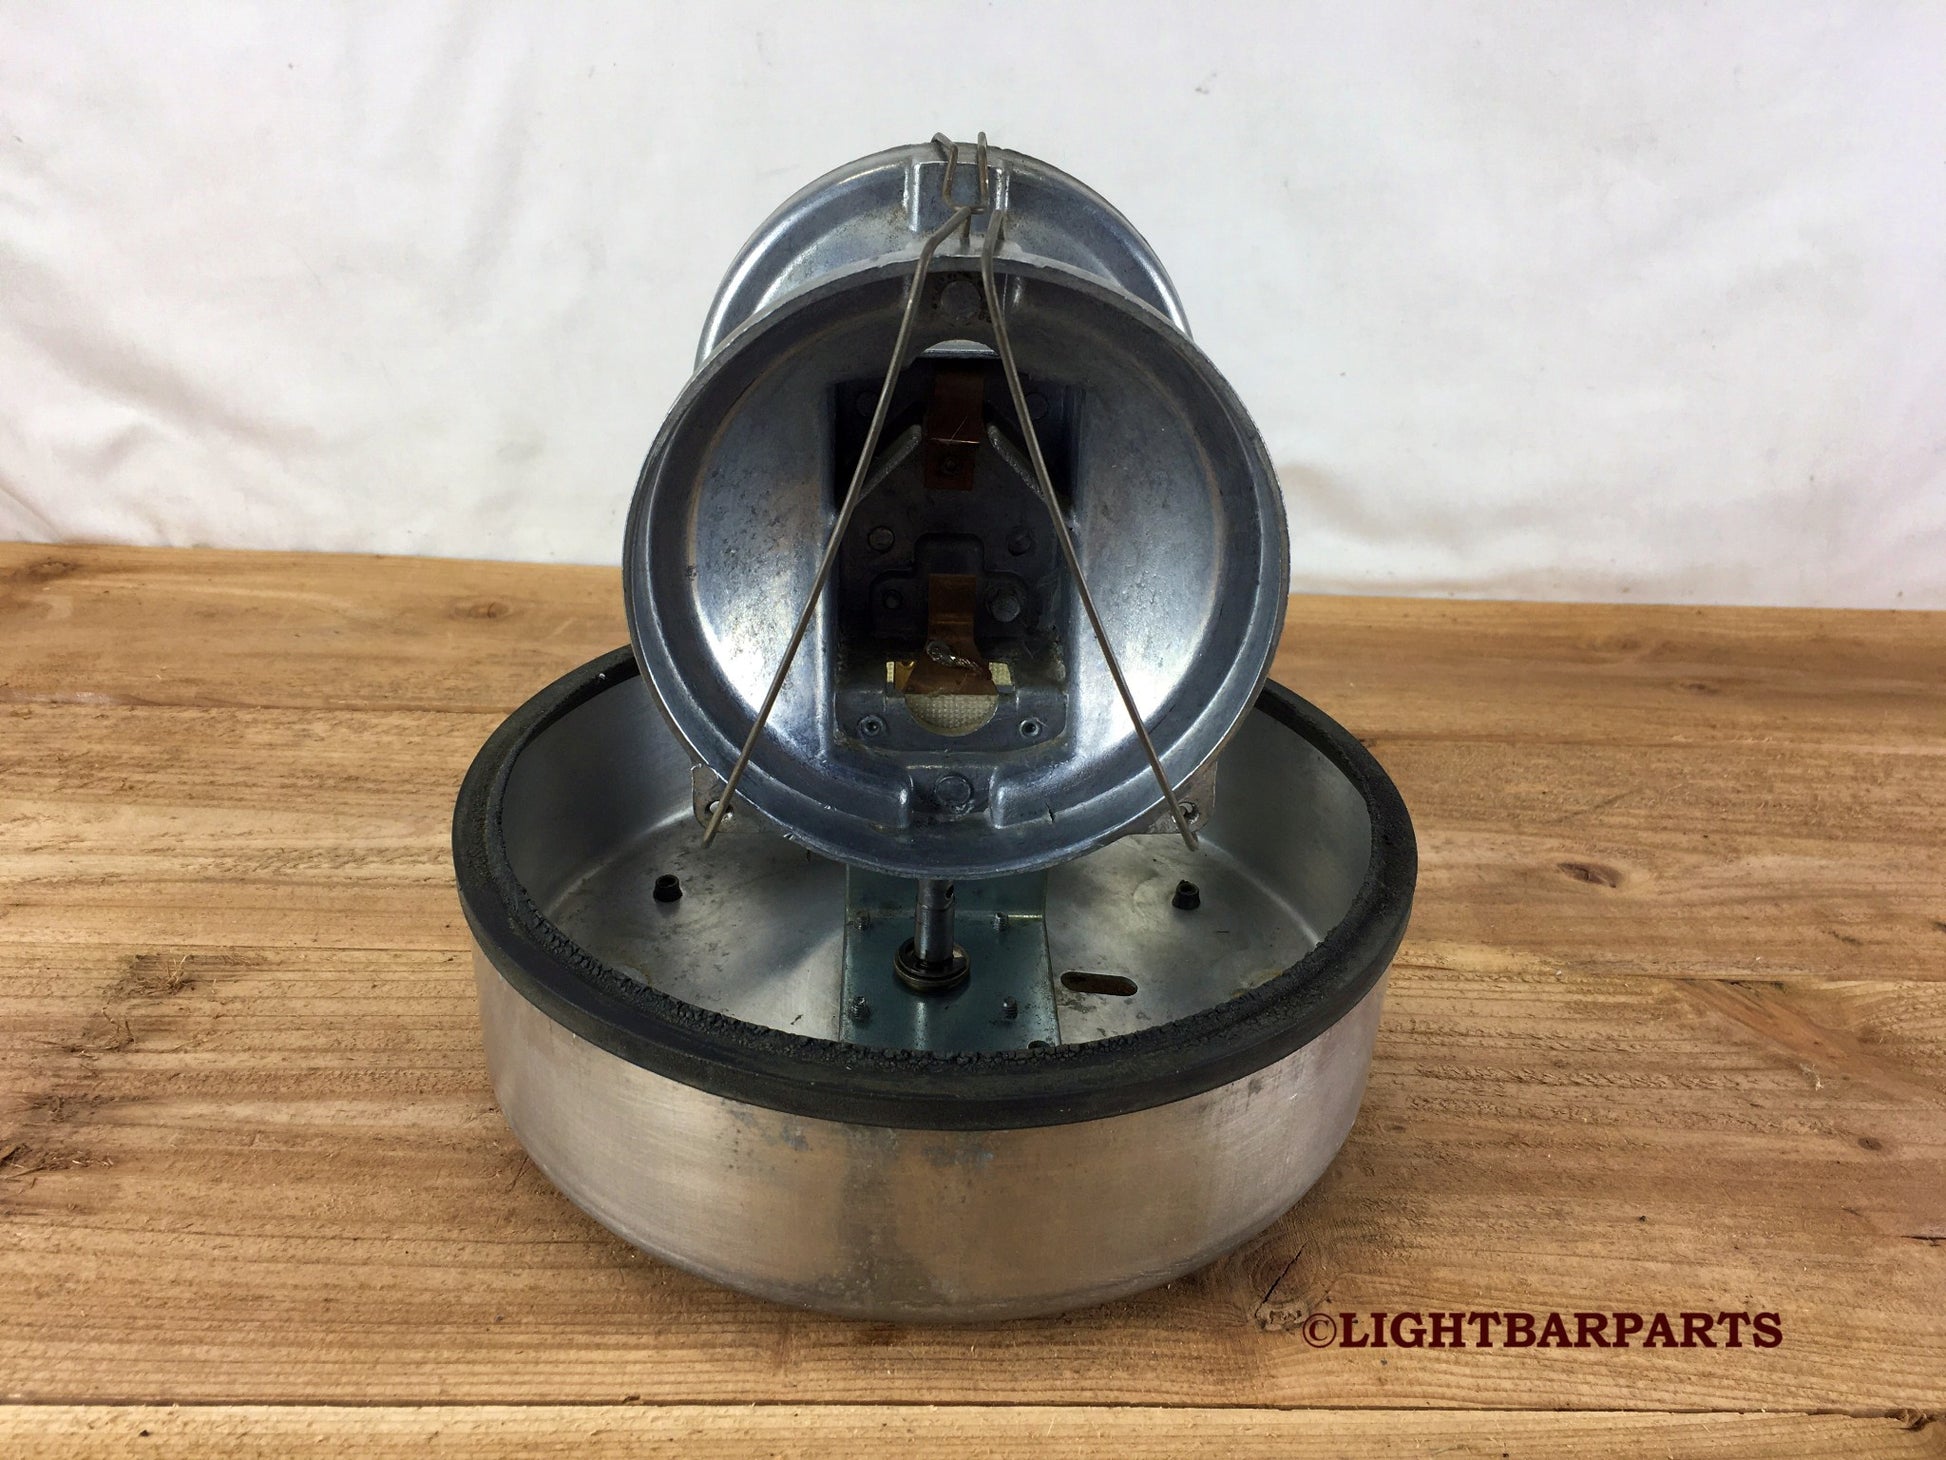 Federal Signal Visibar Twin Beacon Ray Model 11 - Pan with Slave Rotator Head - light bar parts